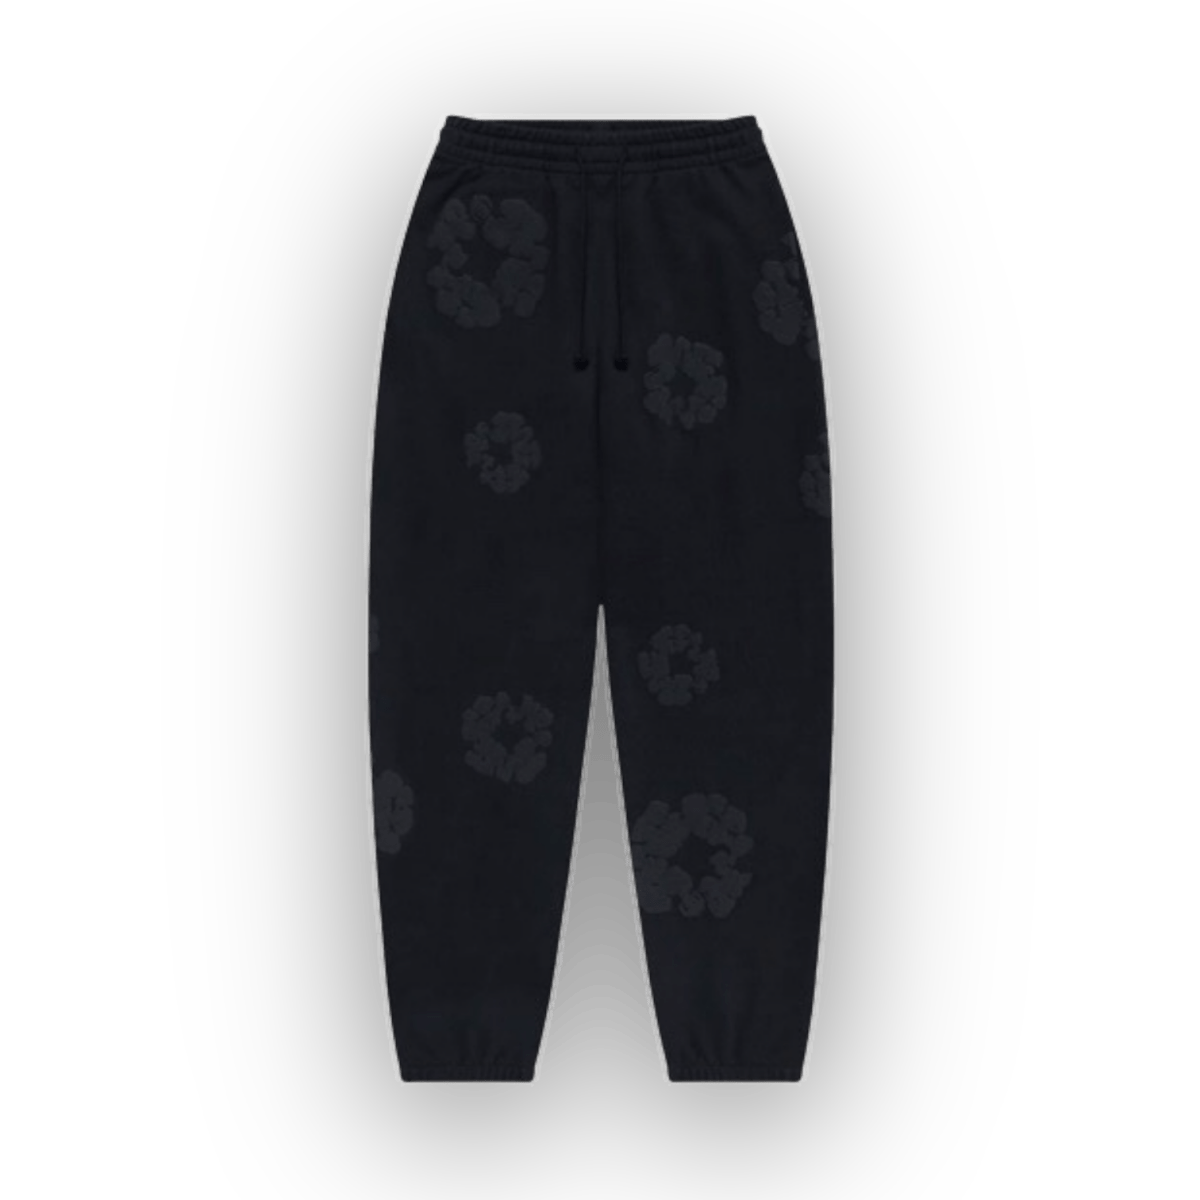 Denim Tears Mono Cotton Wreath Sweatpants Black - Clothing - Jawns on Fire Sneakers & Streetwear